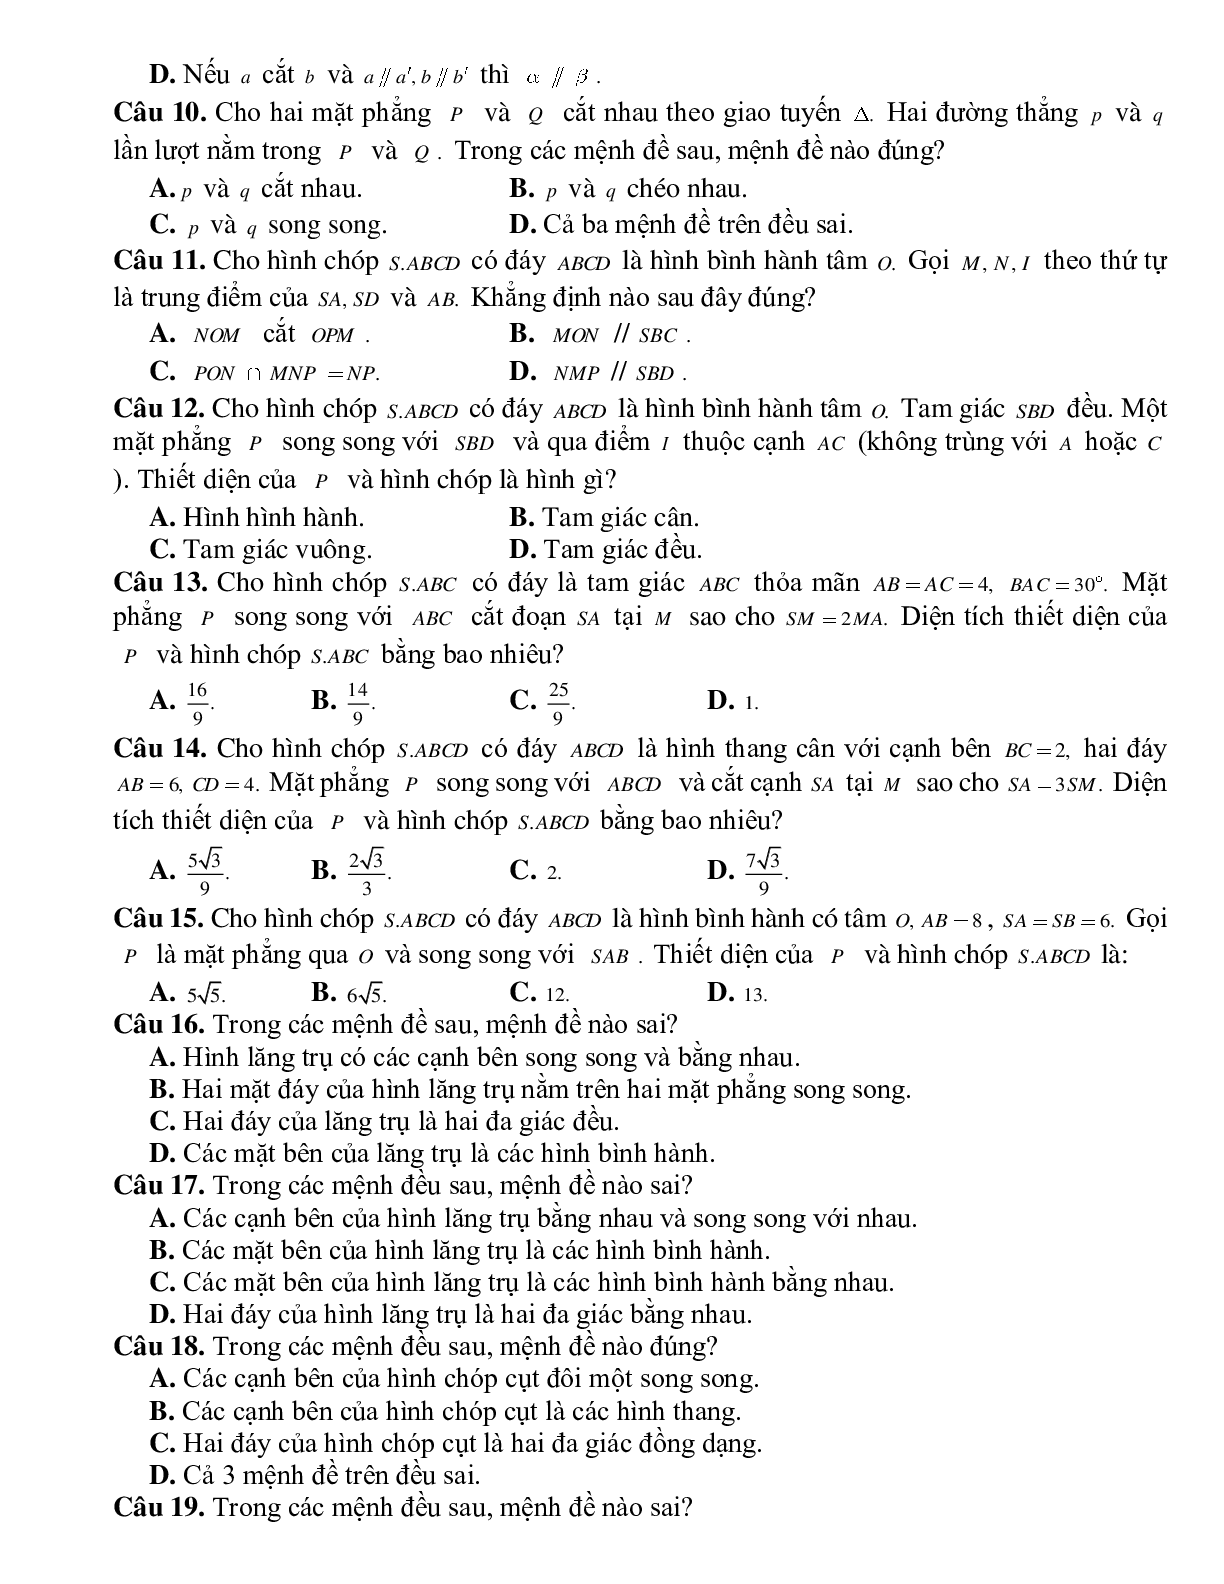 Bài tập Toán hình 11 Bài 4 có đáp án: Hai mặt phẳng song song (trang 5)